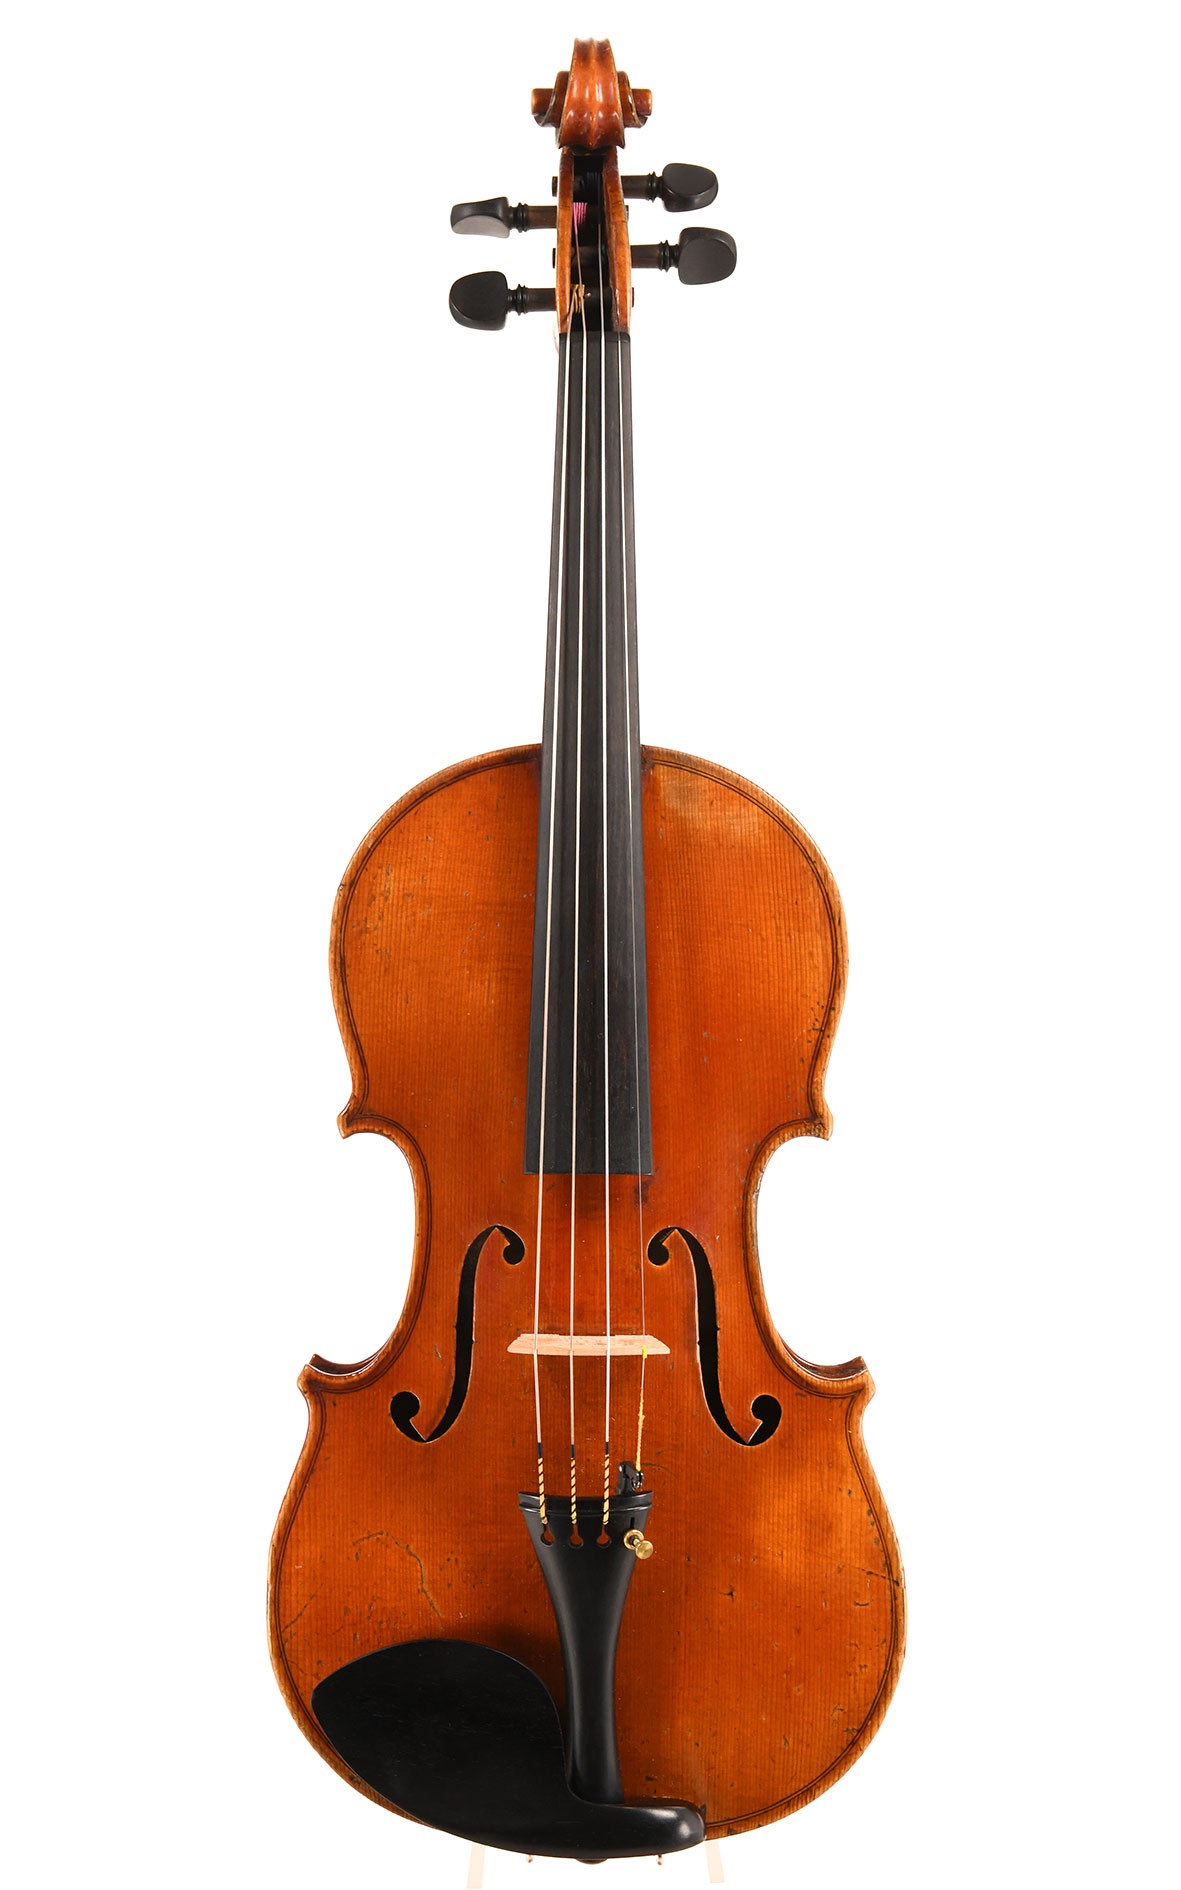 H. Derazey, professionell genutze Geige